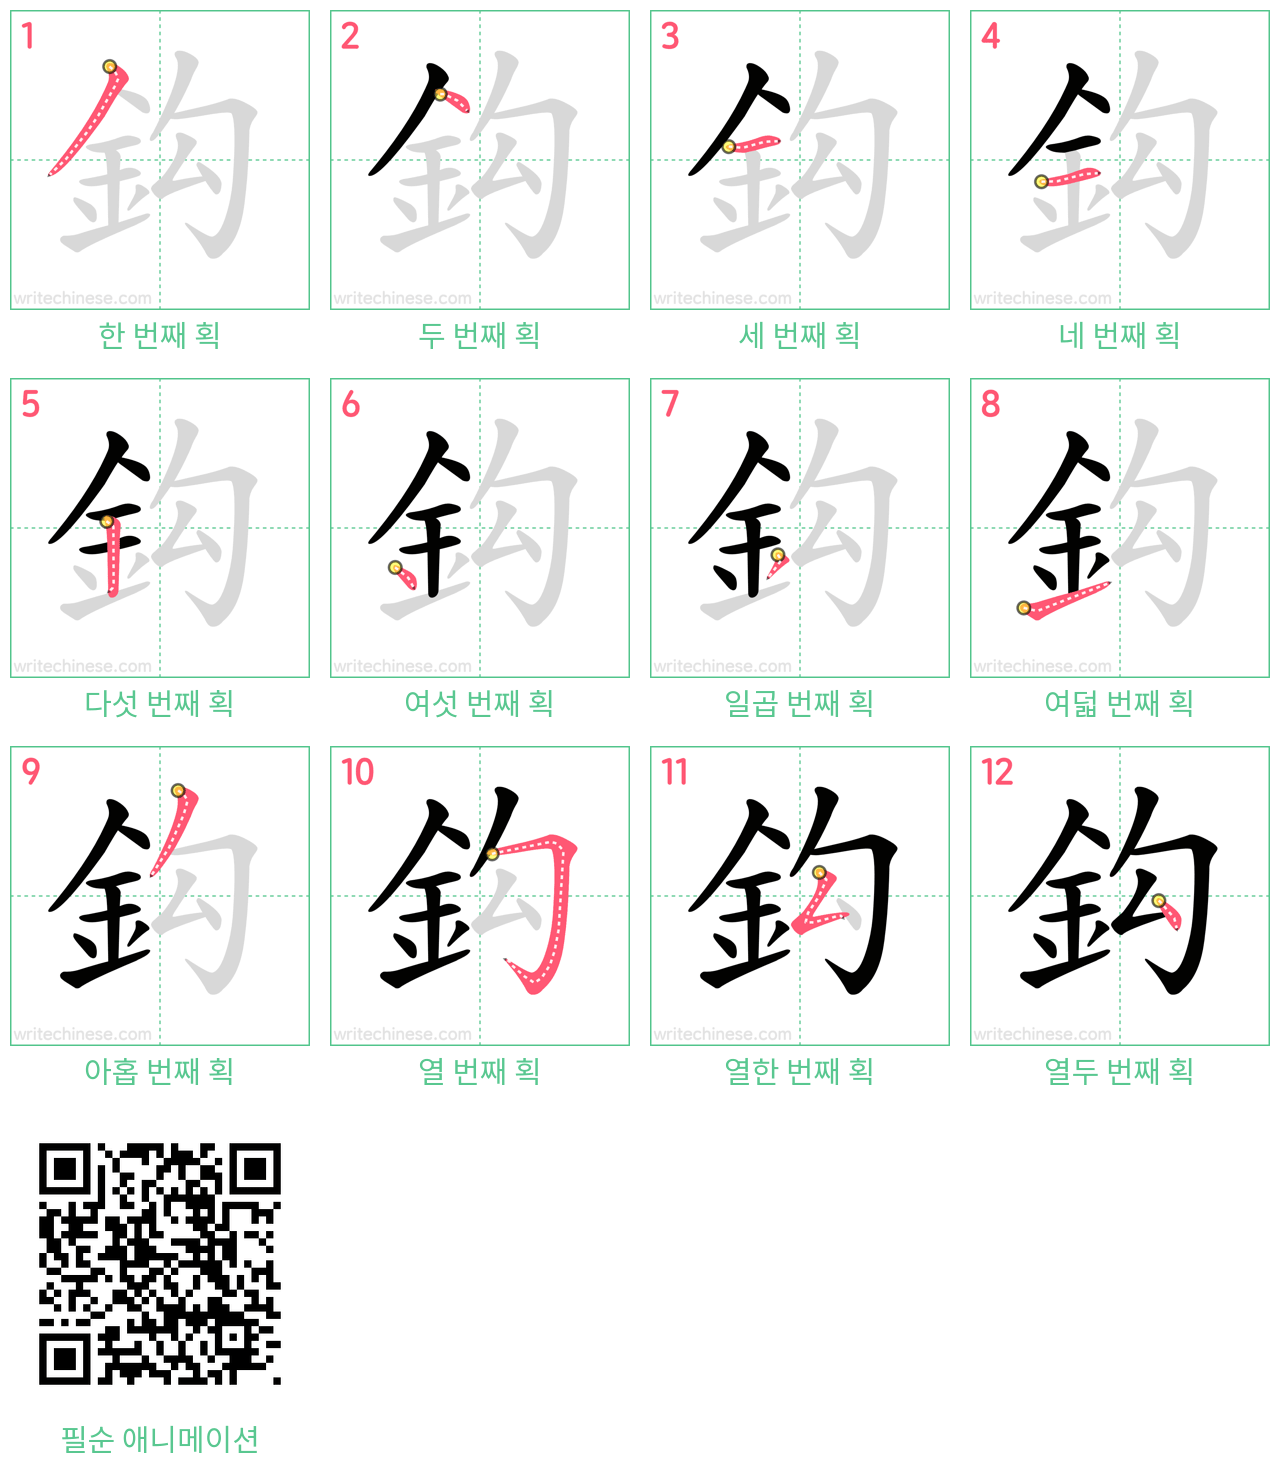 鈎 step-by-step stroke order diagrams